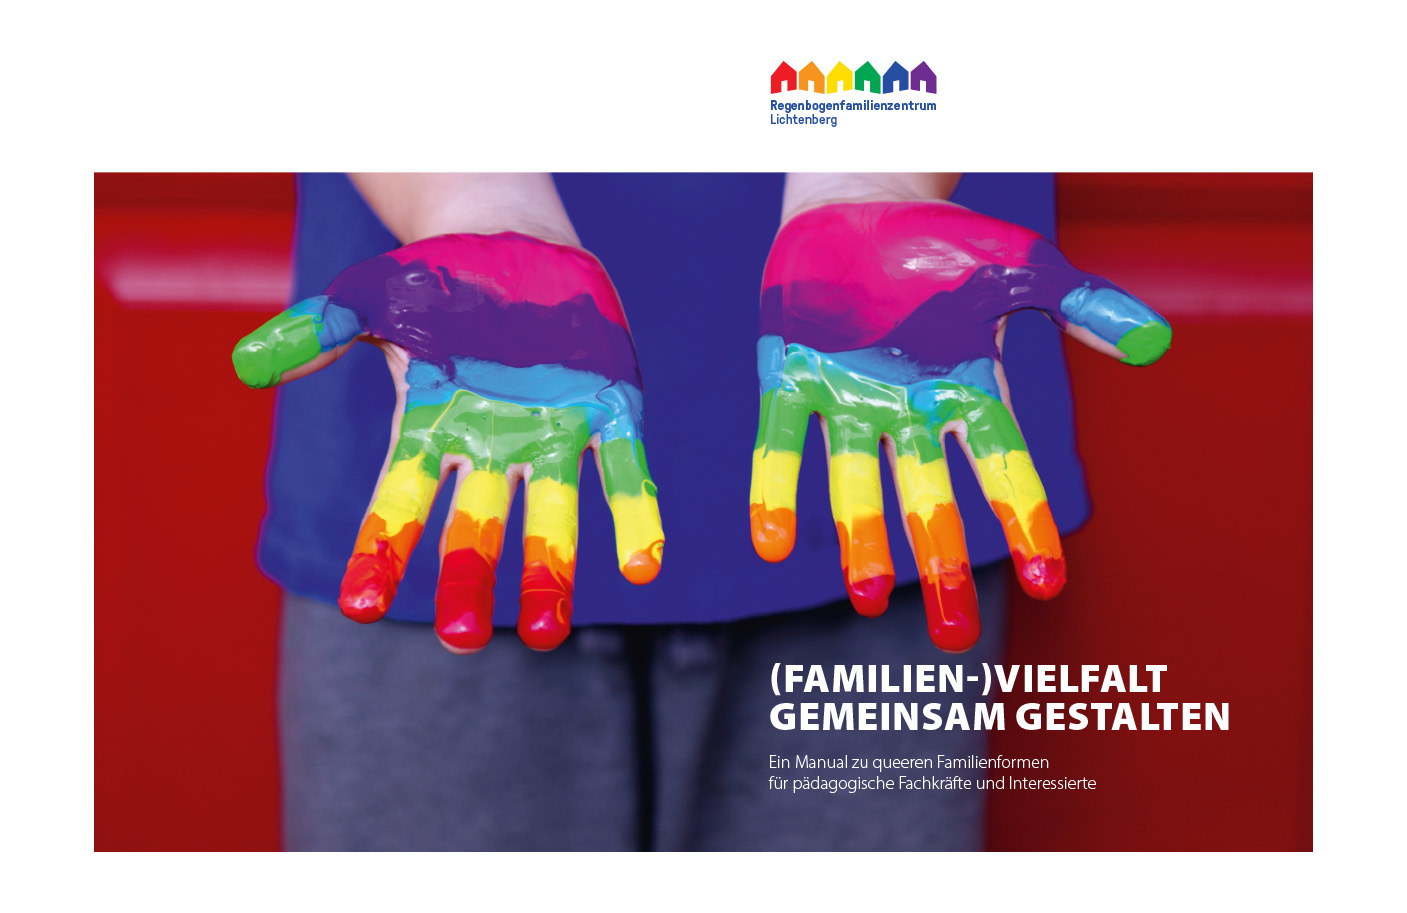 Titel (Familien-)Vielfalt gemeinsam gestalten. Ein Manual zu queeren Familienformen für pädagogische Fachkräfte und Interessierte